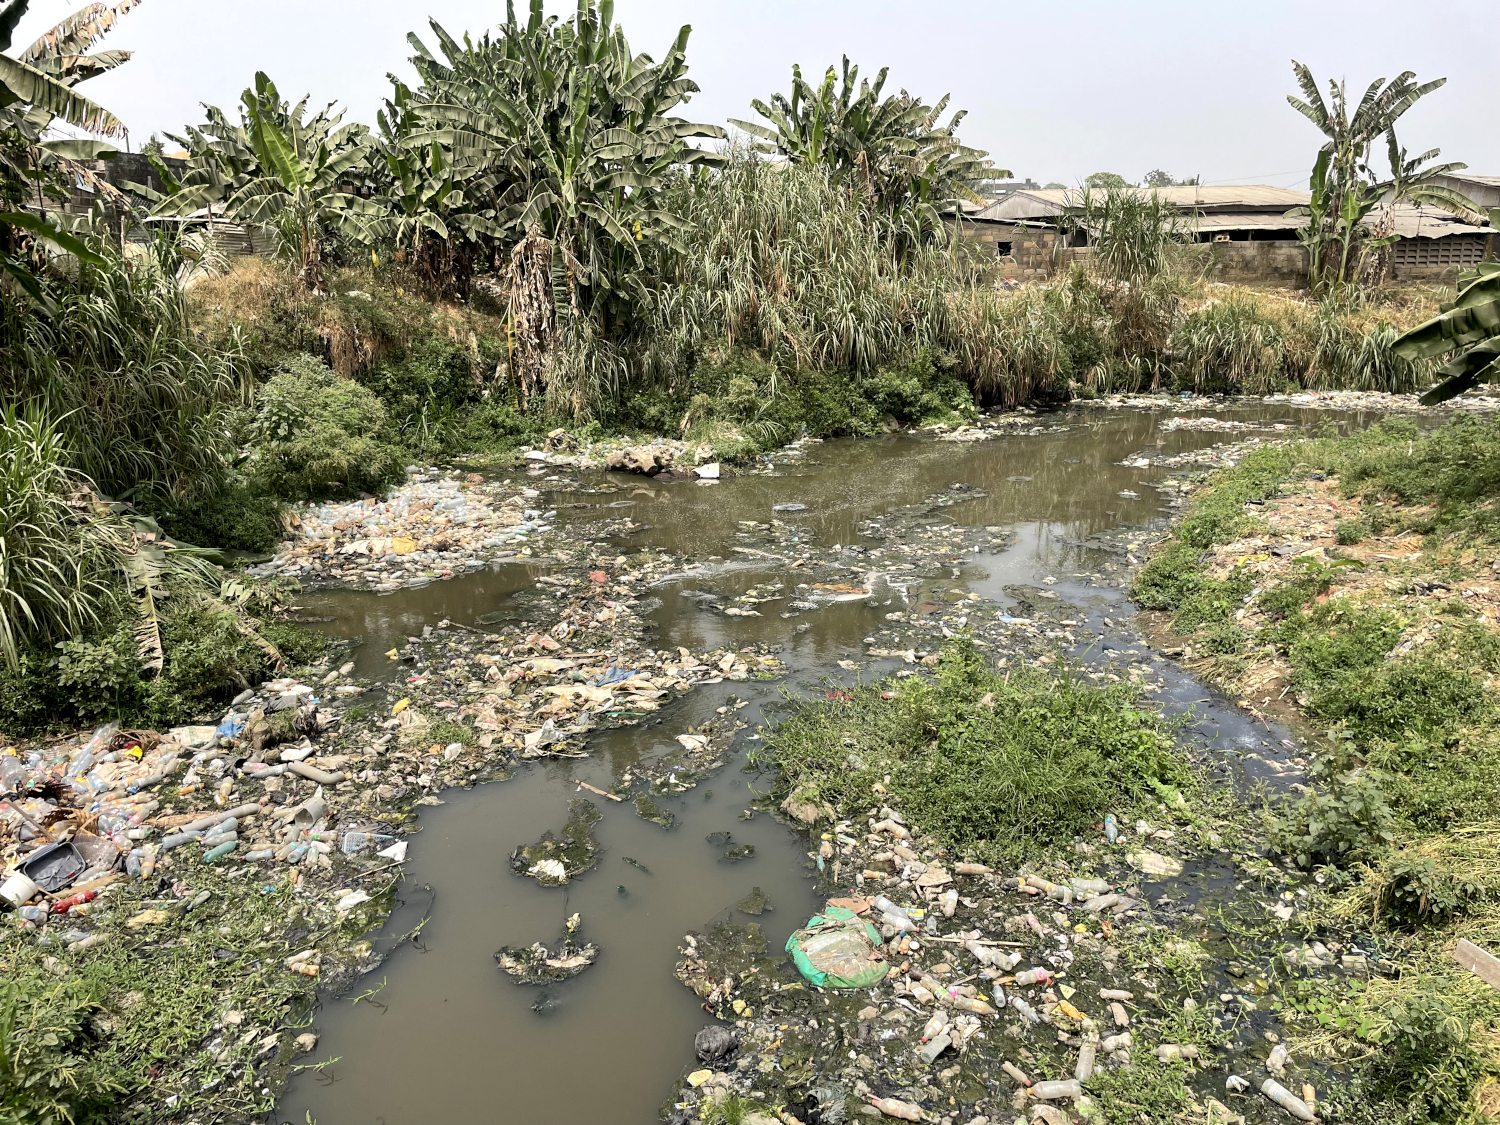 Très polluée, la rivière charrie les immondices lorsqu’elle est en crue © Globe Reporters